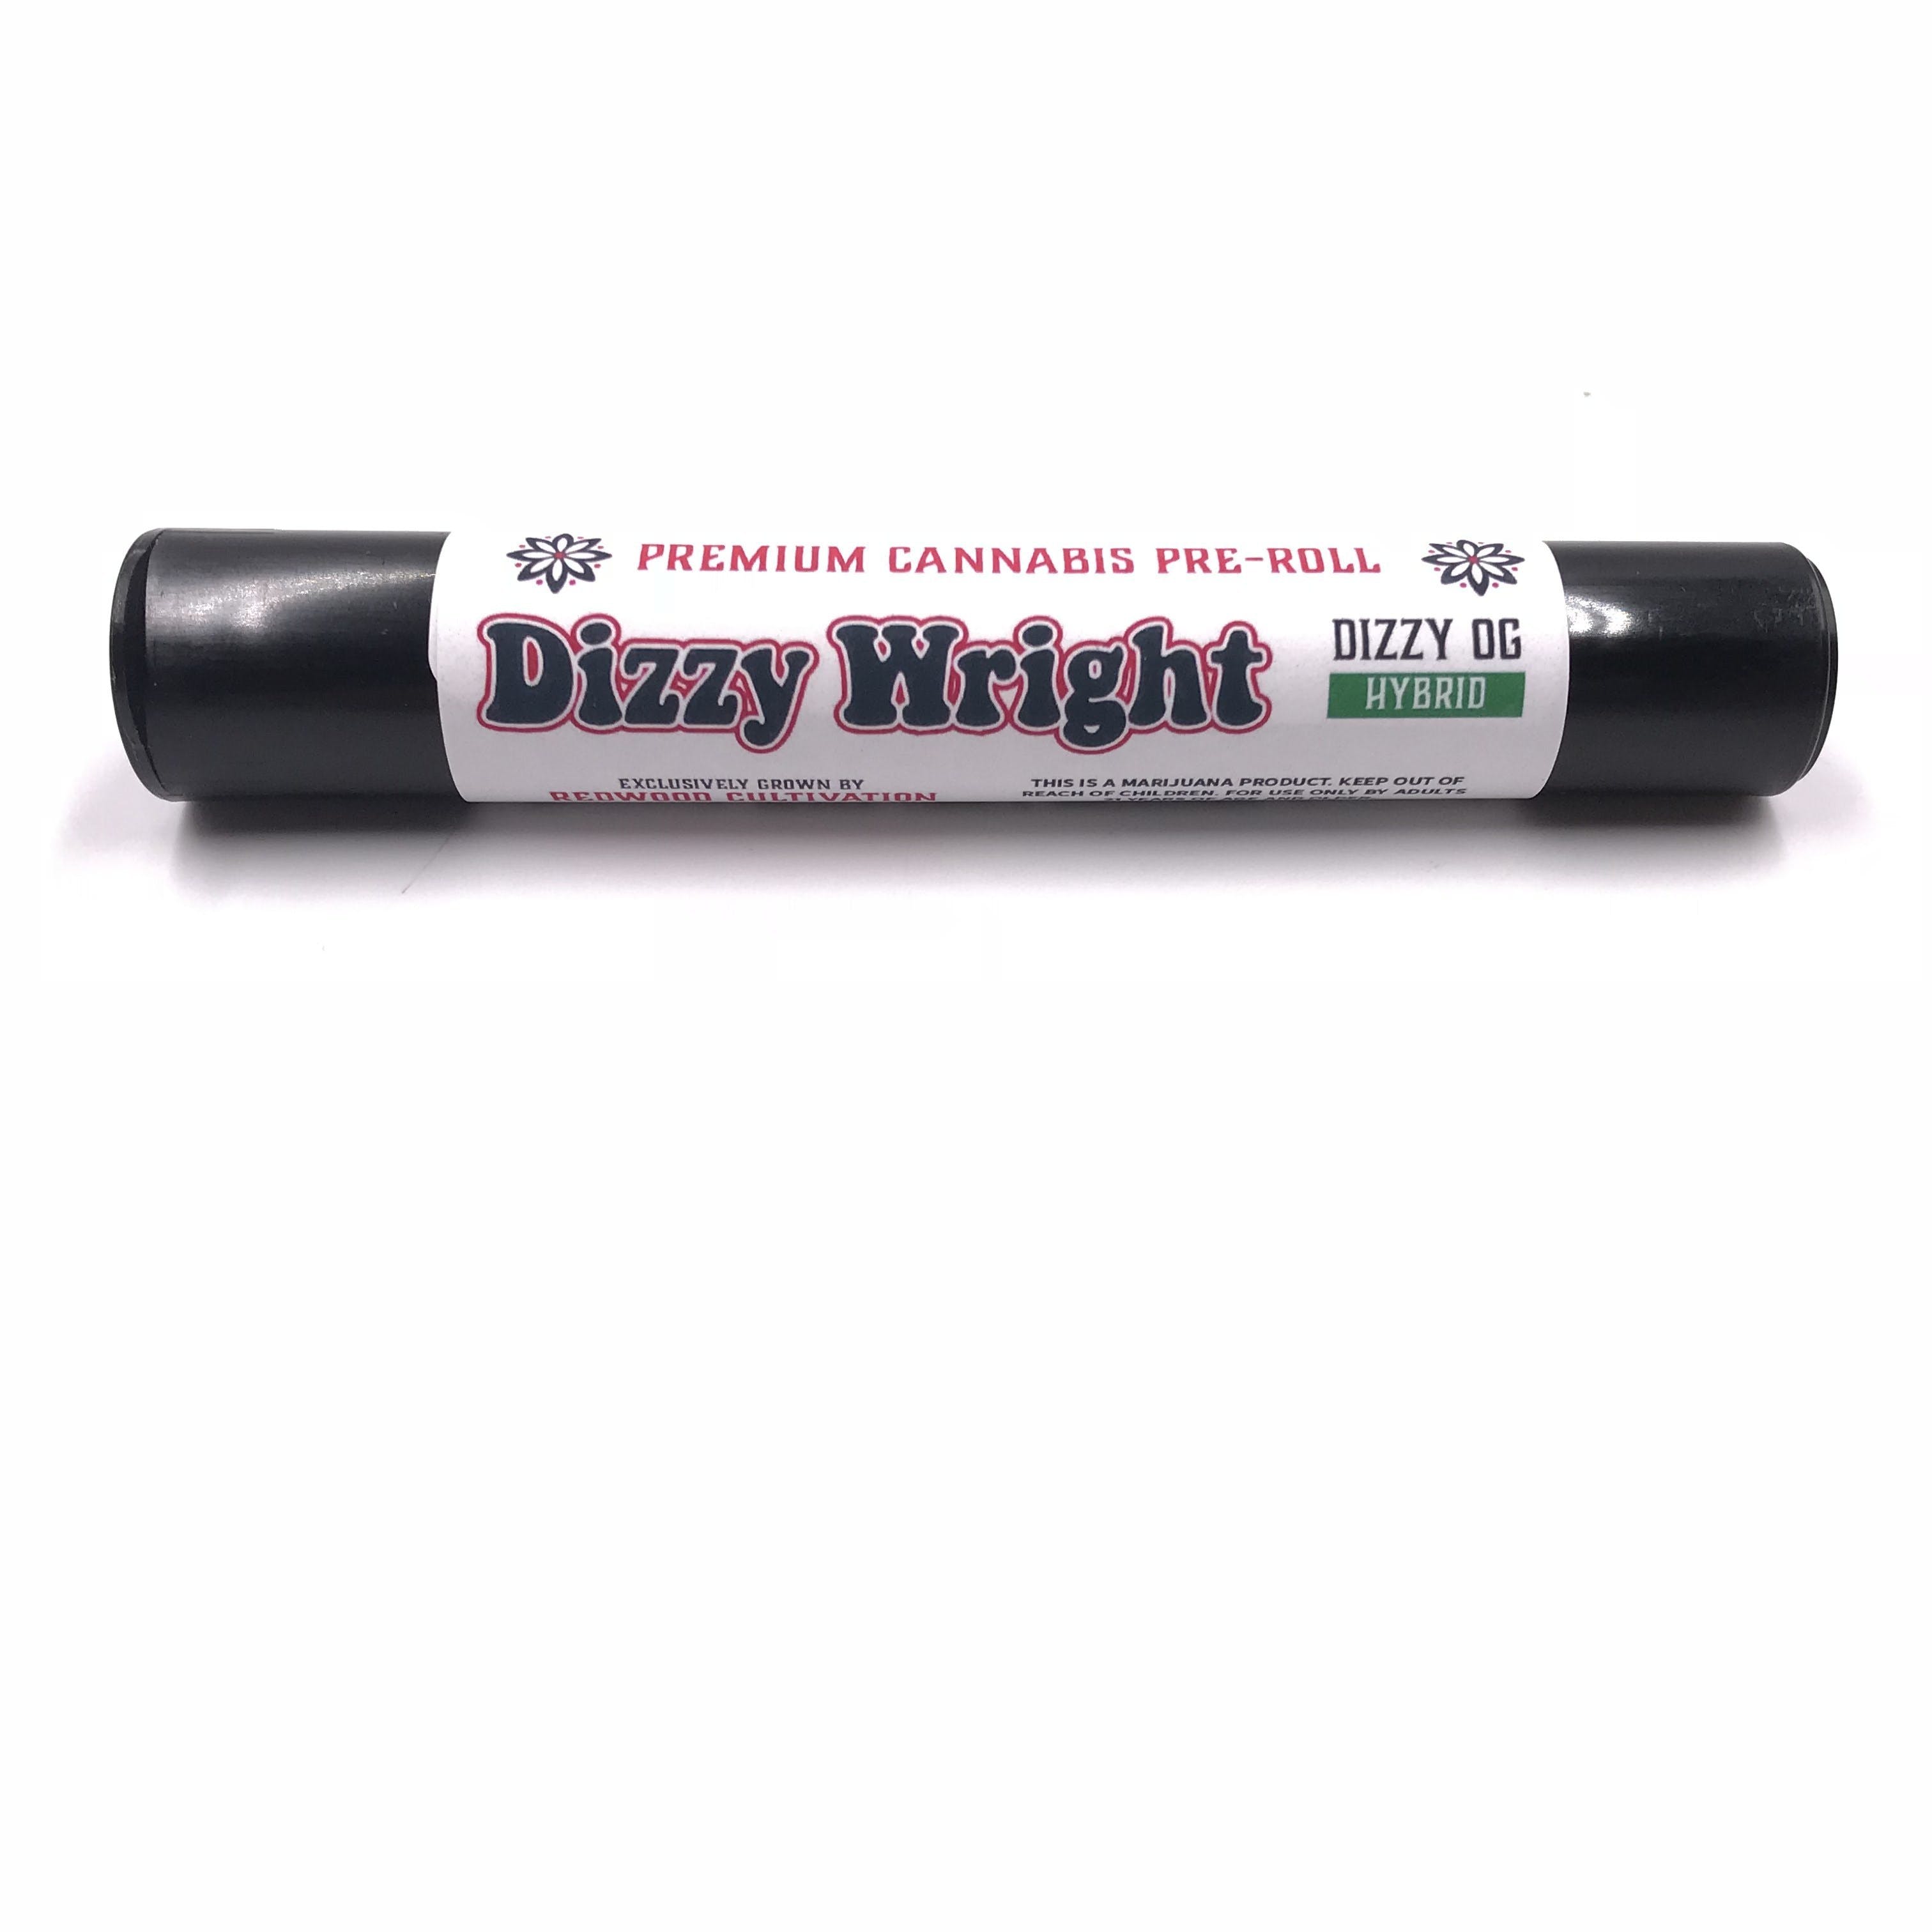 Dizzy OG Preroll - Dizzy Wright